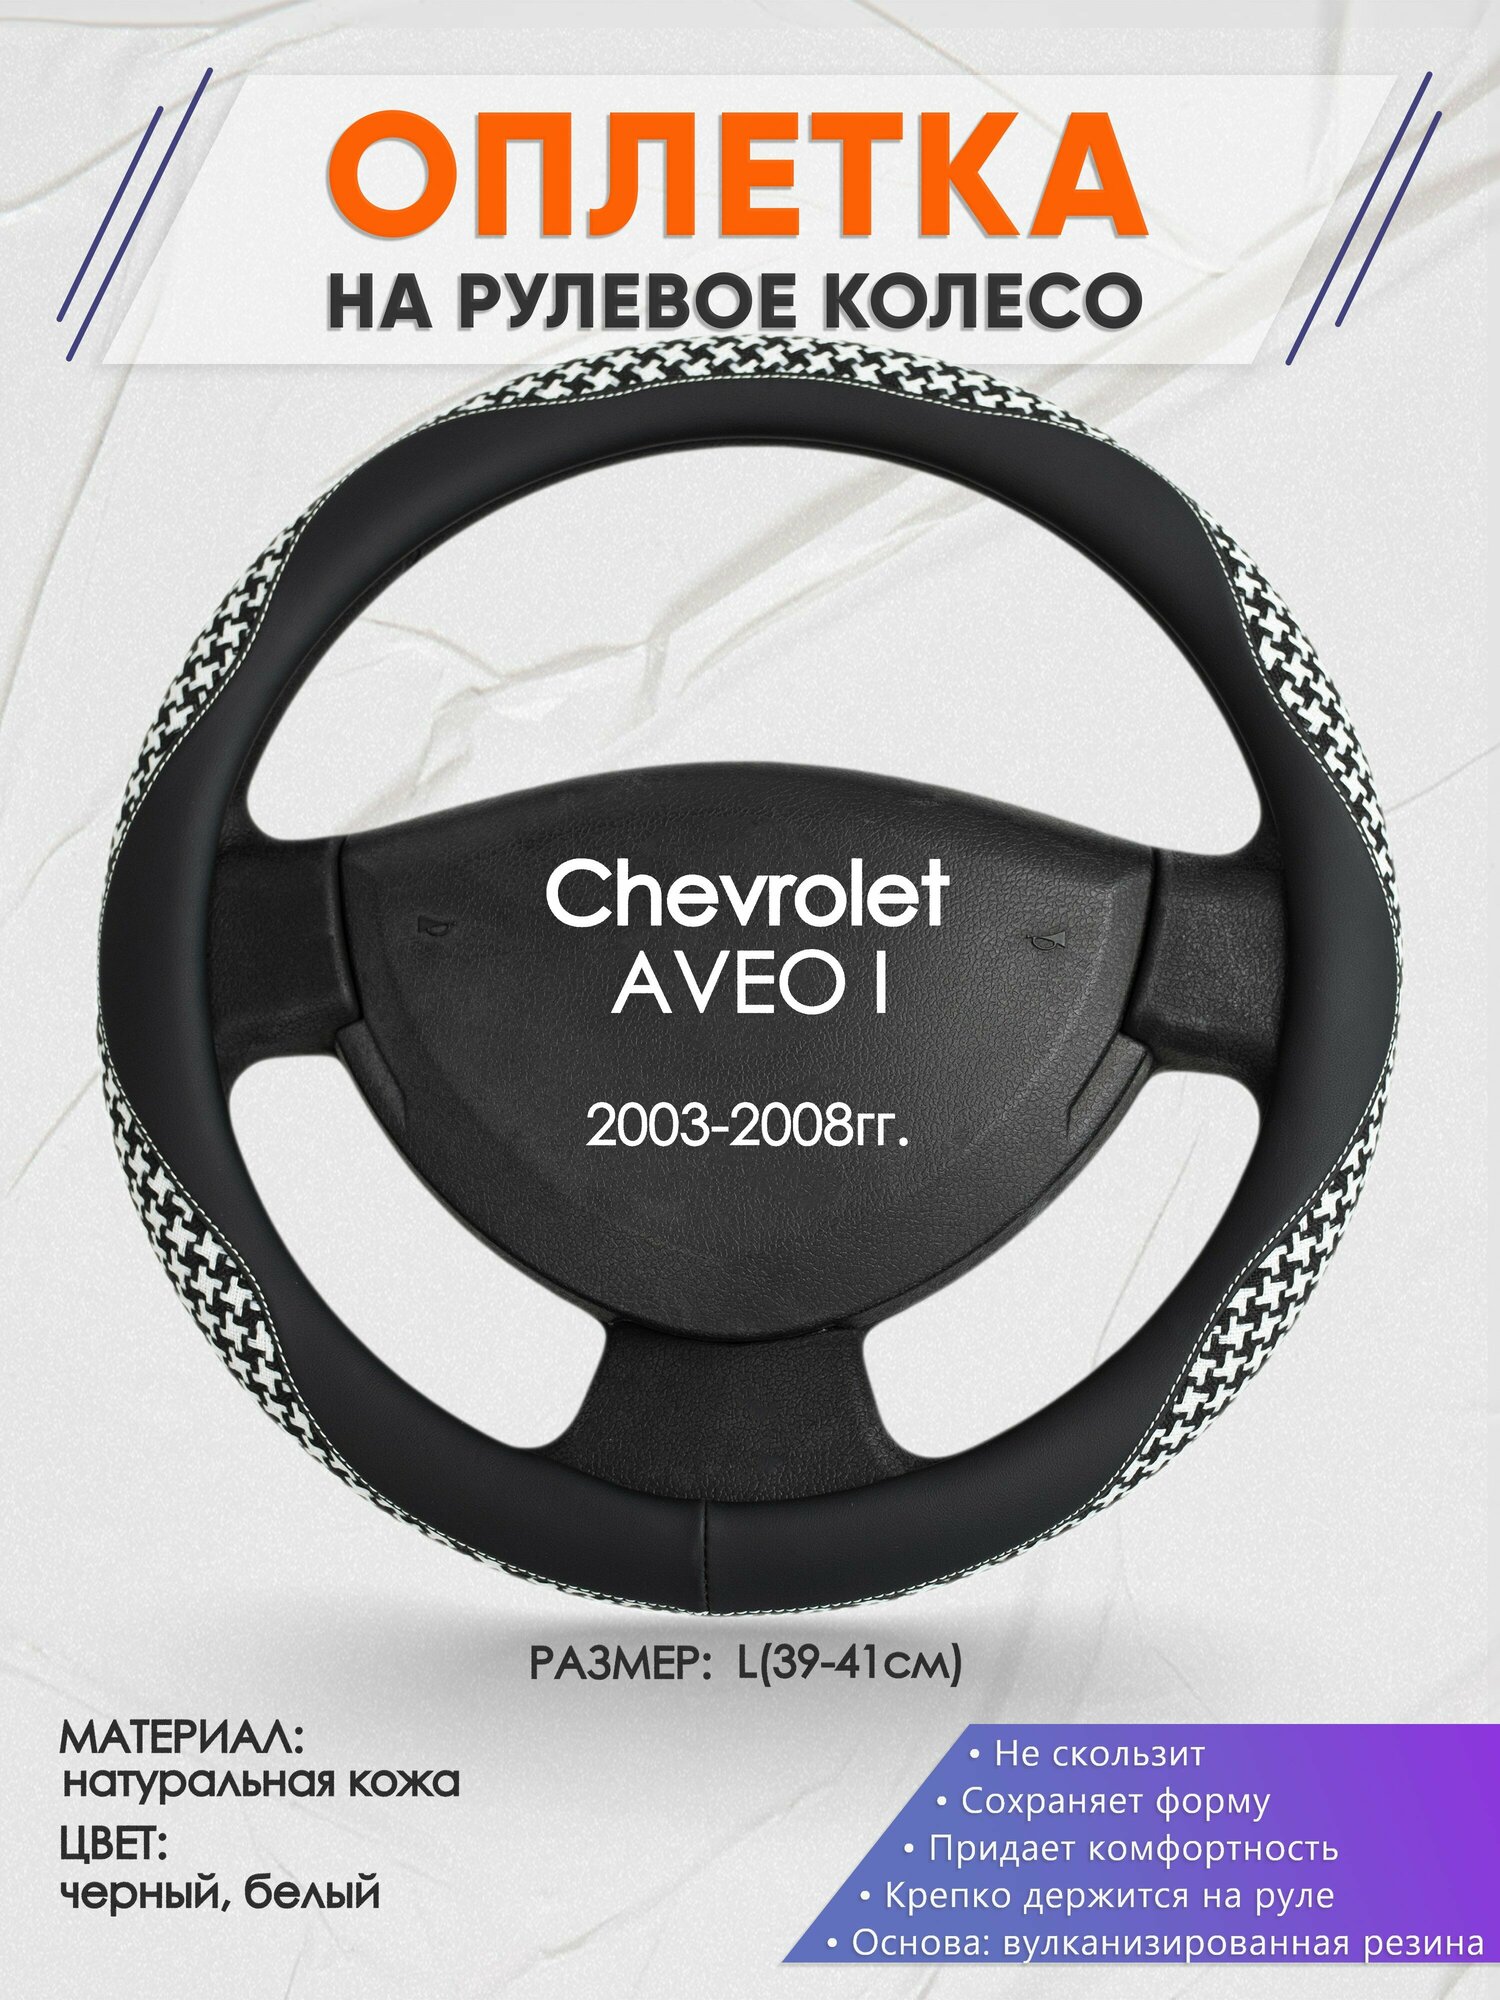 Оплетка на руль для Chevrolet AVEO I(Шевроле Авео 1) 2003-2008 L(39-41см) Натуральная кожа 28